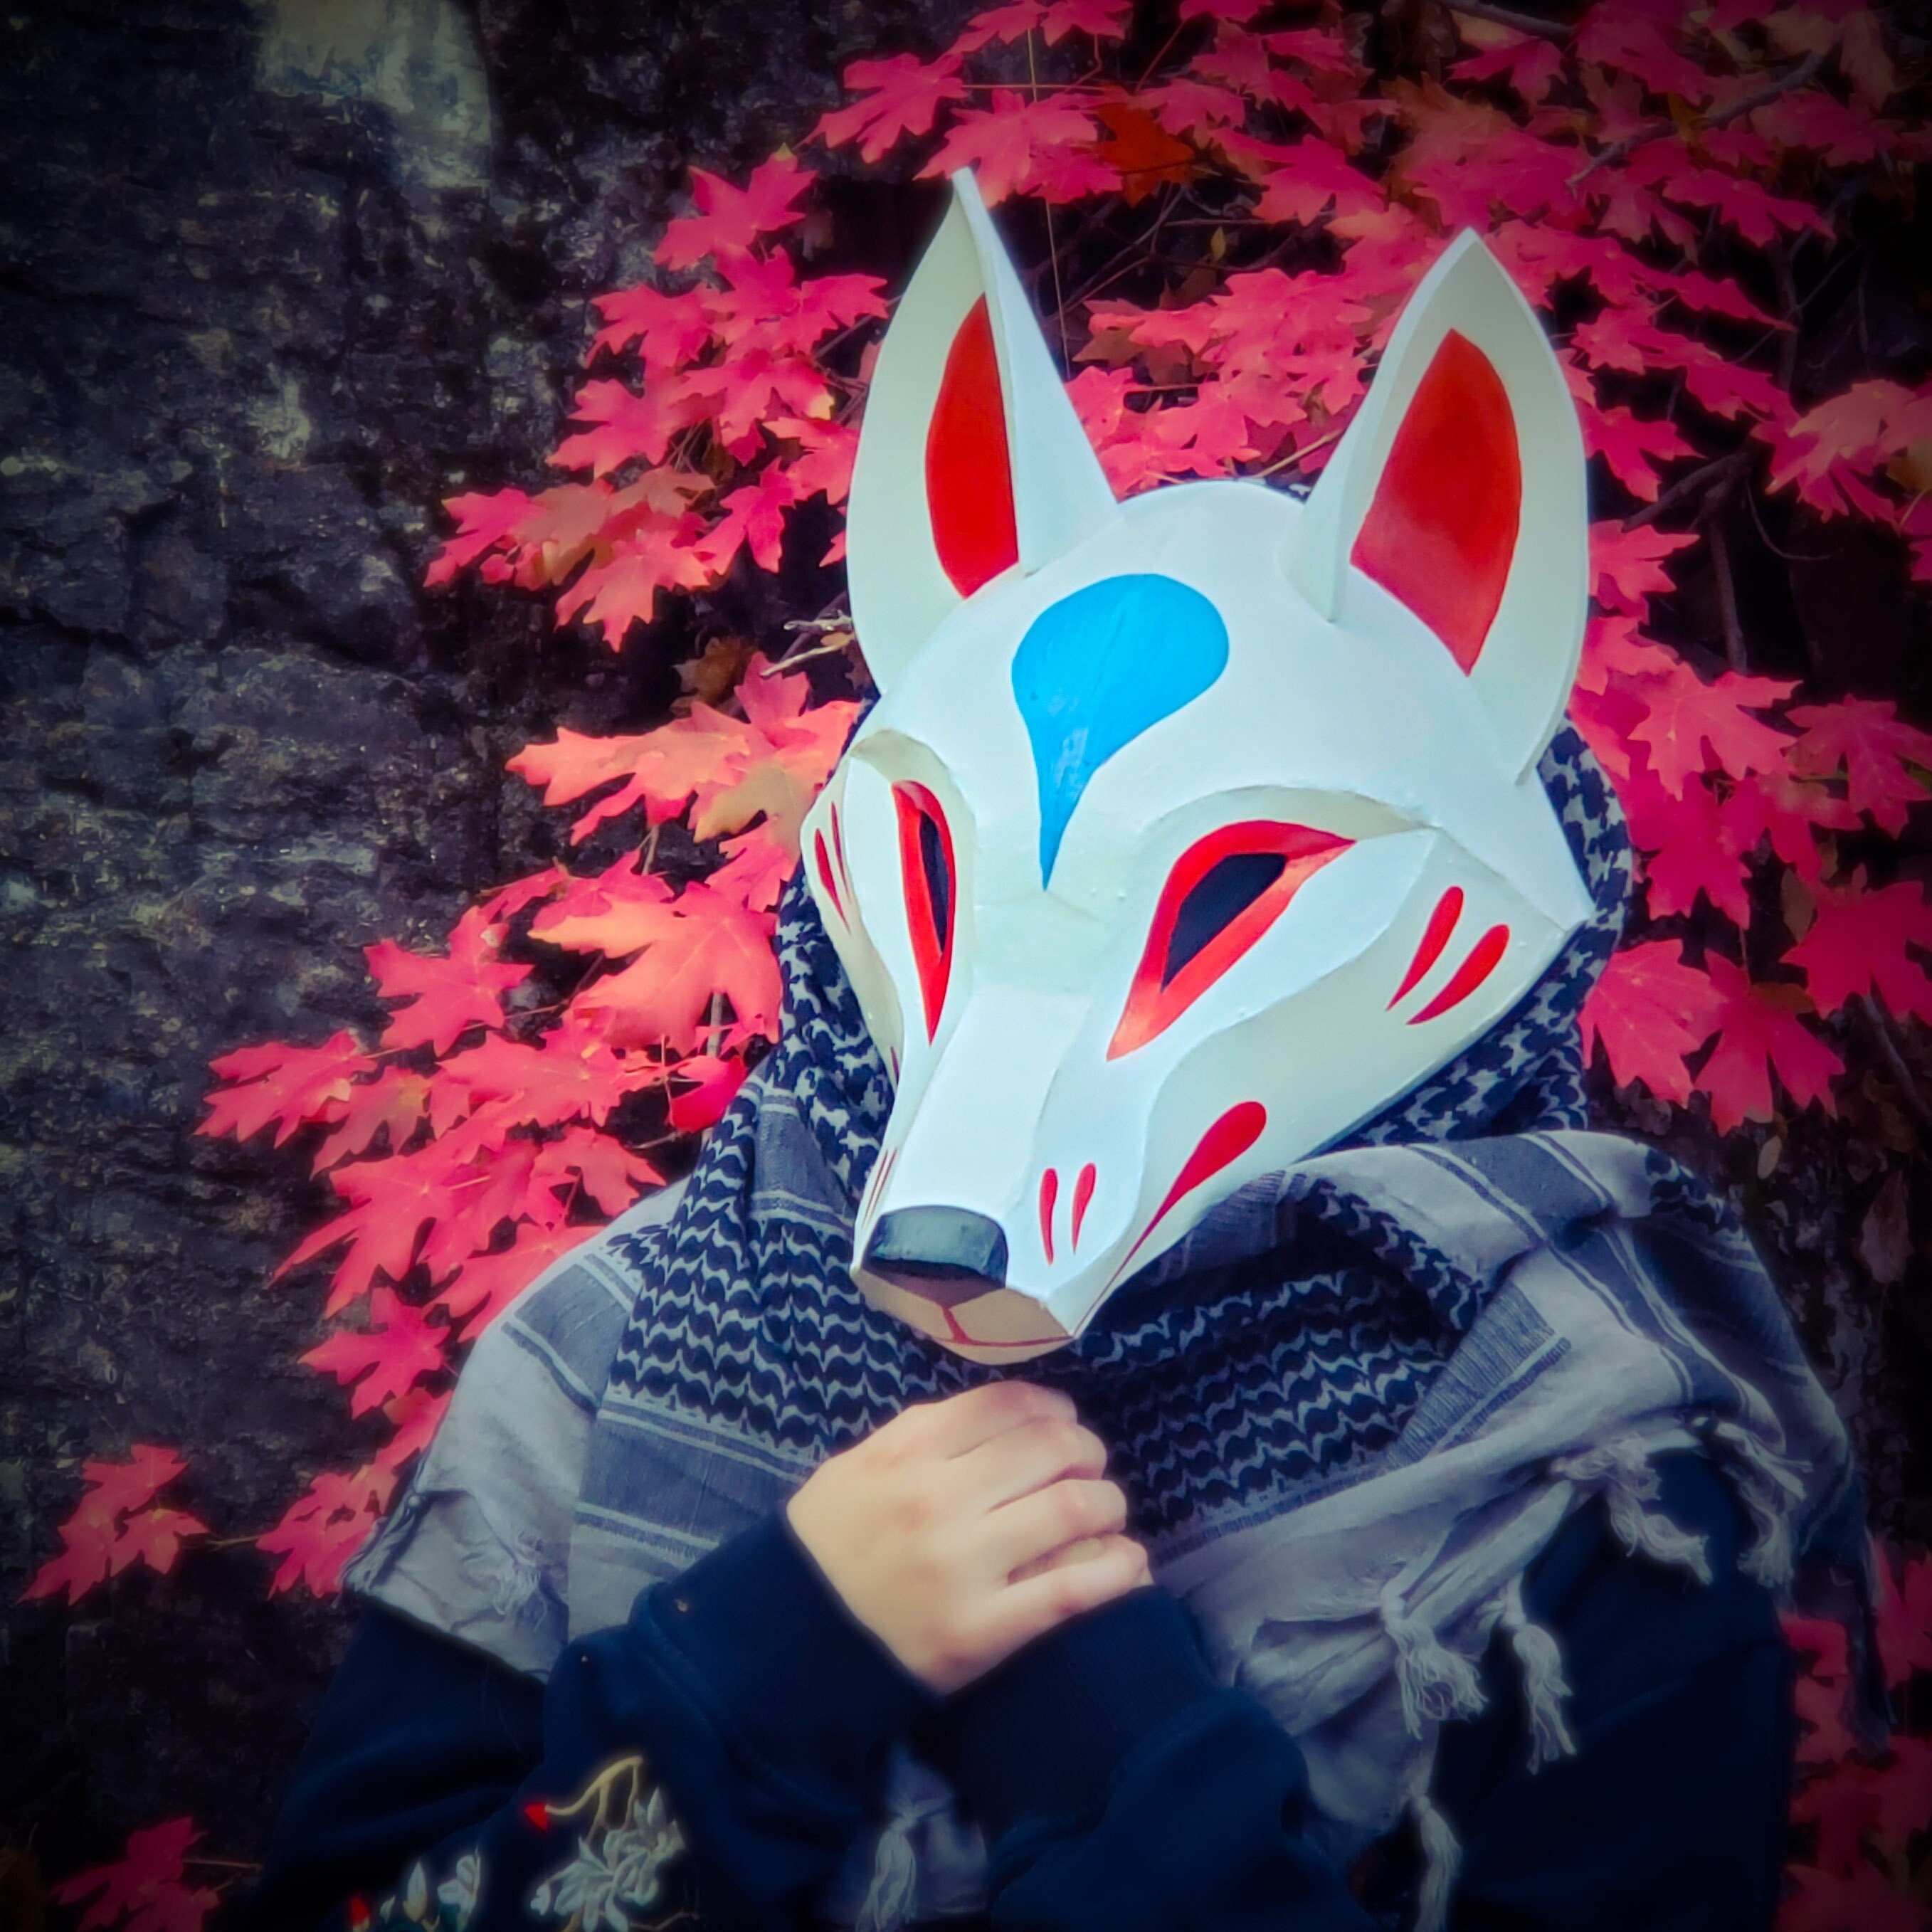 Kitsune Mask Resin Japanese Fox Classic Masks Made to Order white 